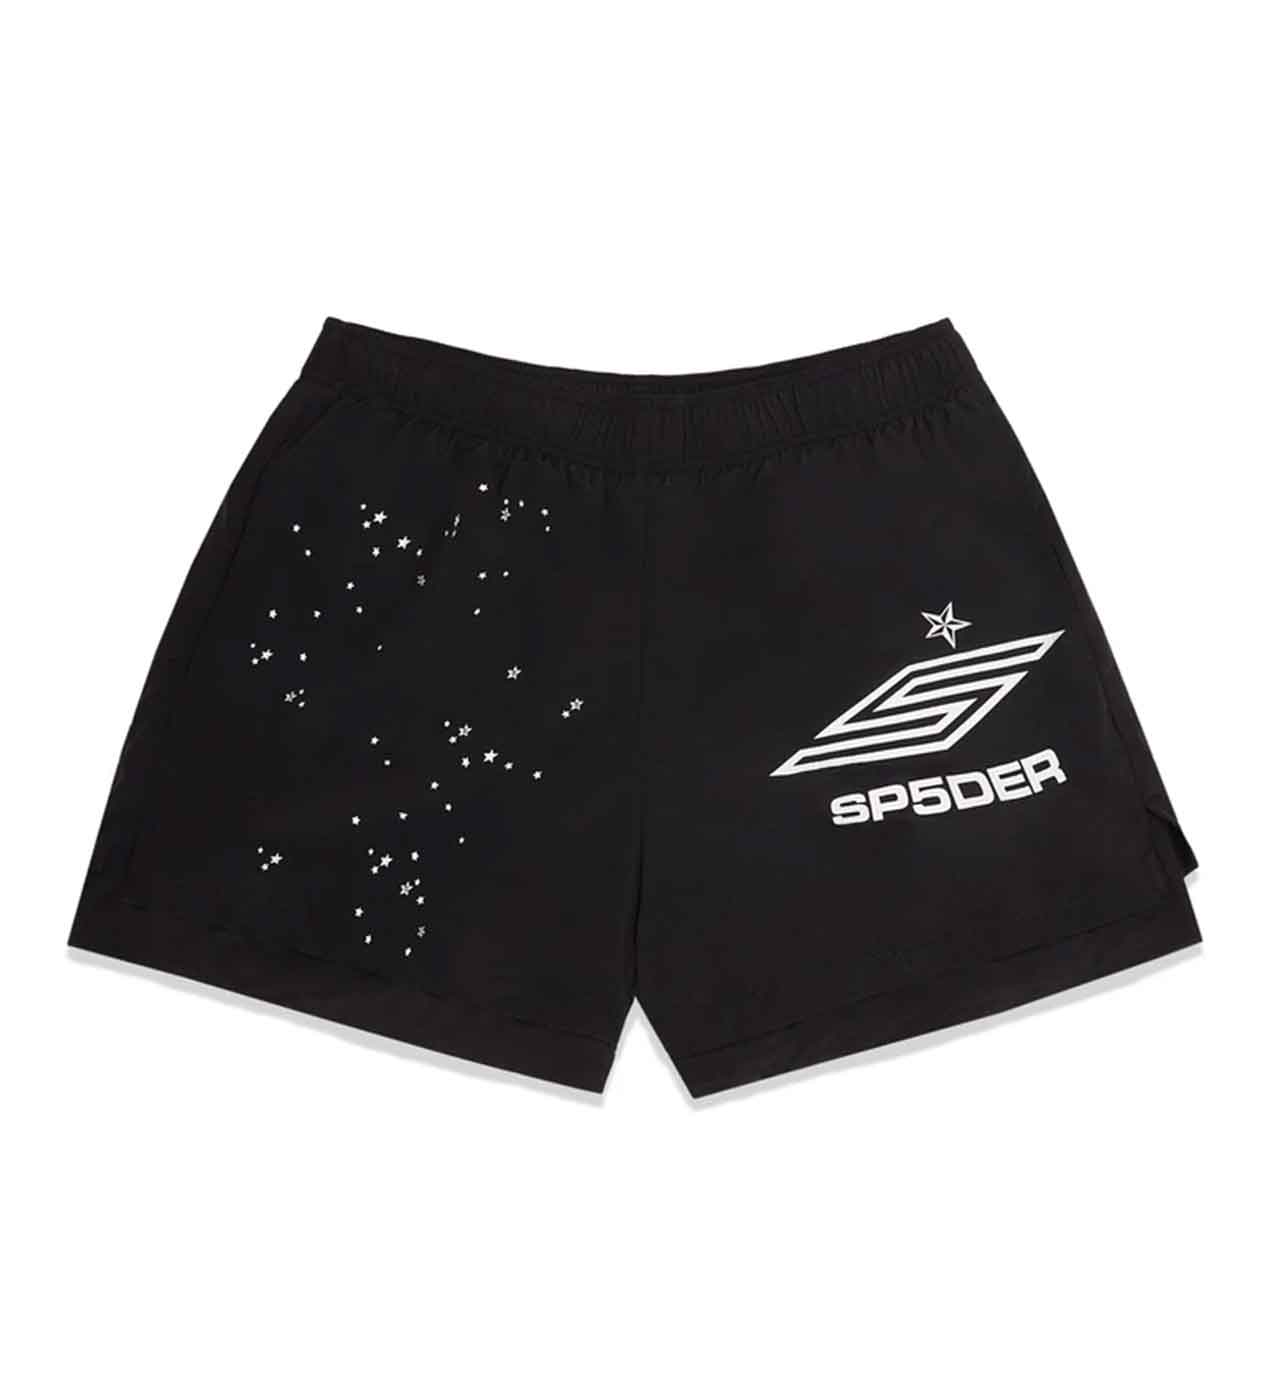 Sp5der Pro Double Layer Shorts Black front